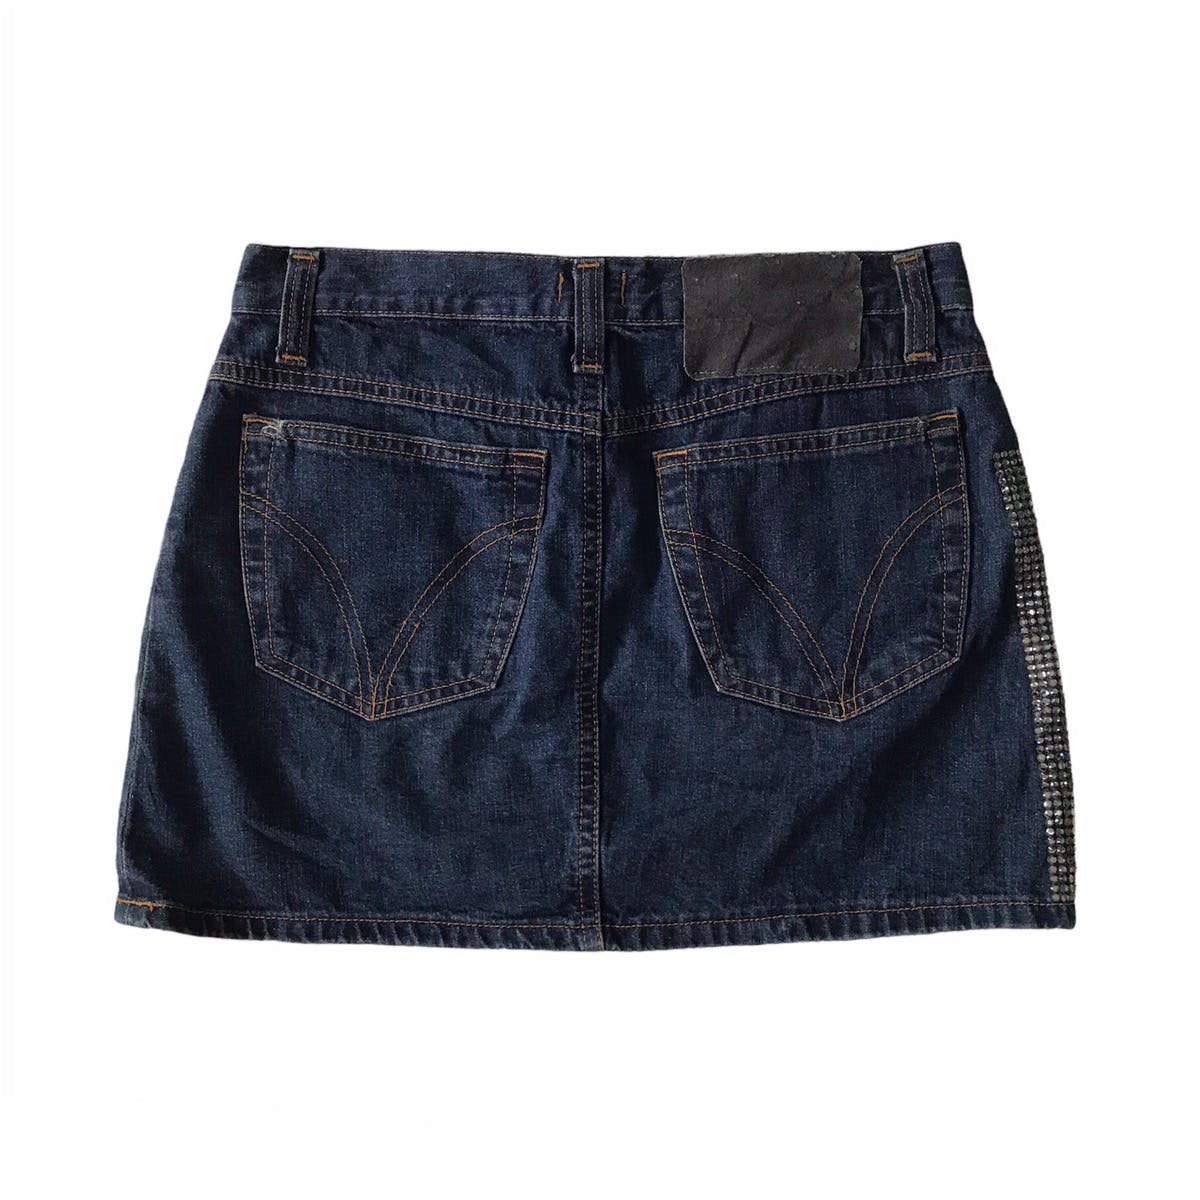 💥Steals💥D&G Dolce & Gabbana Skirt Jeans - 2